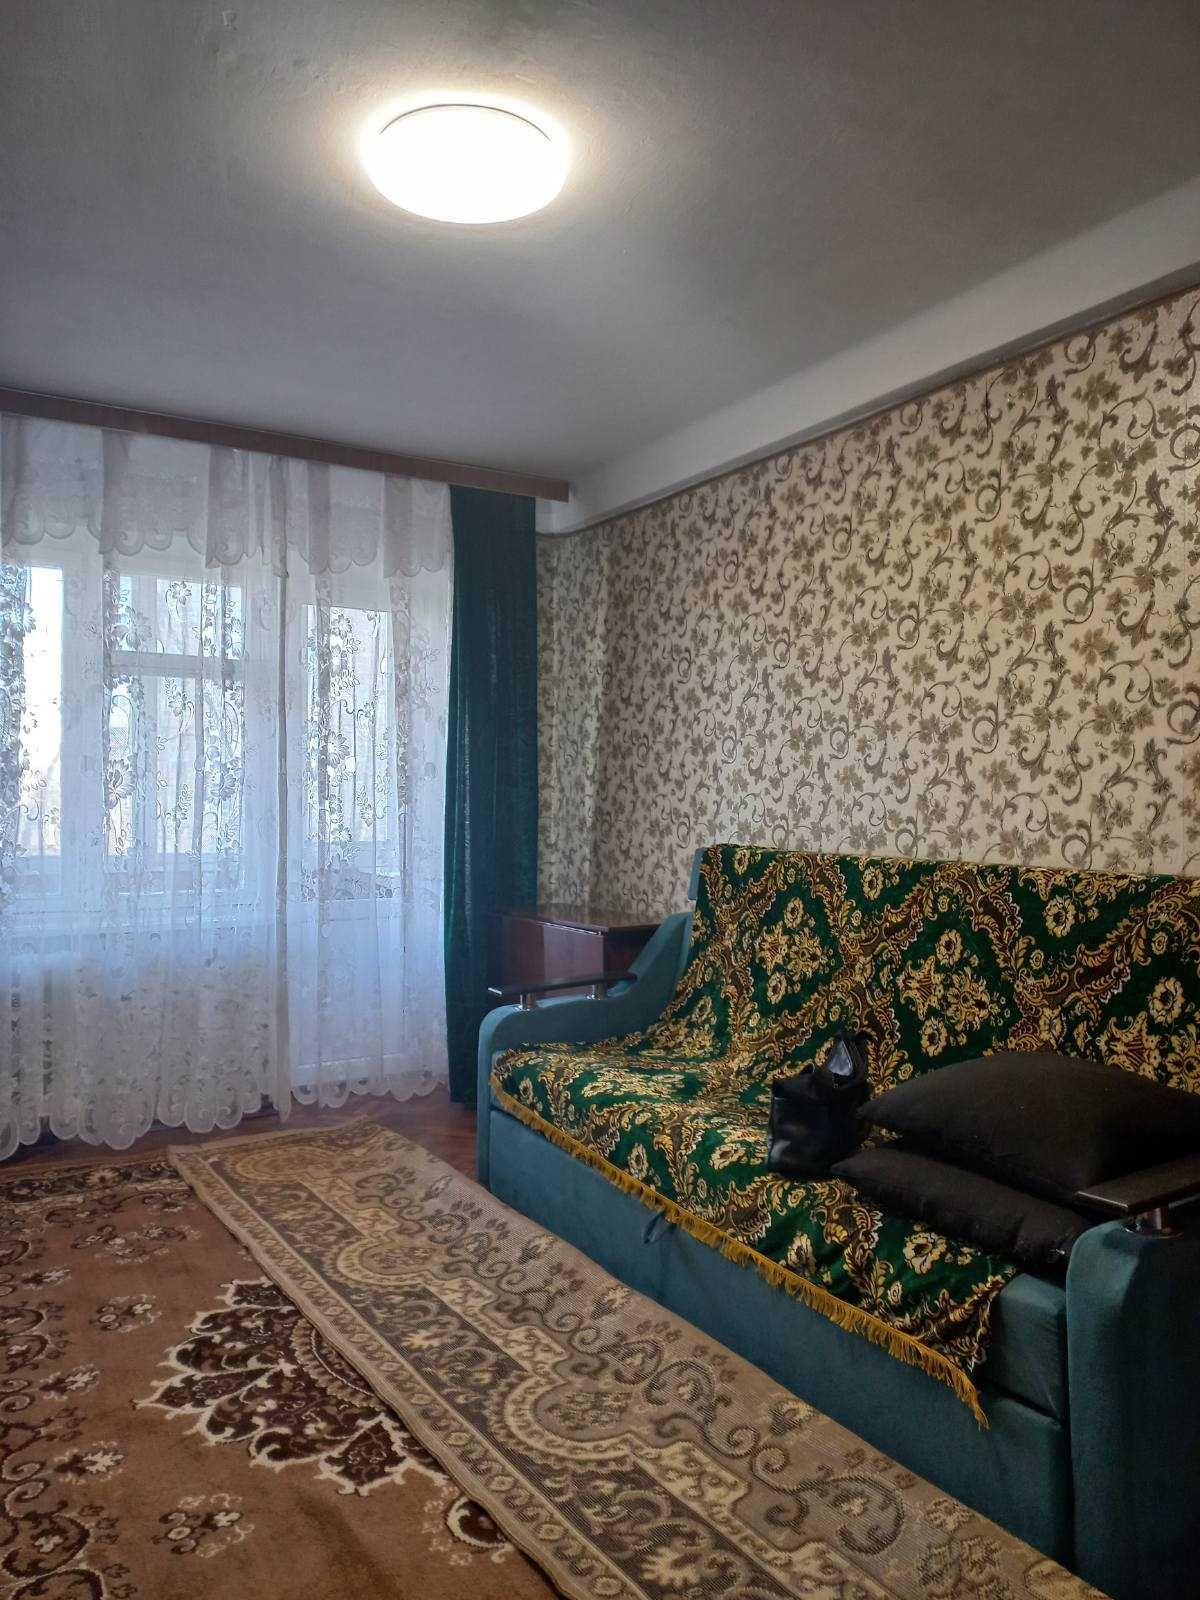 2-х кімнатна оренда квартири, метро Дарниця.